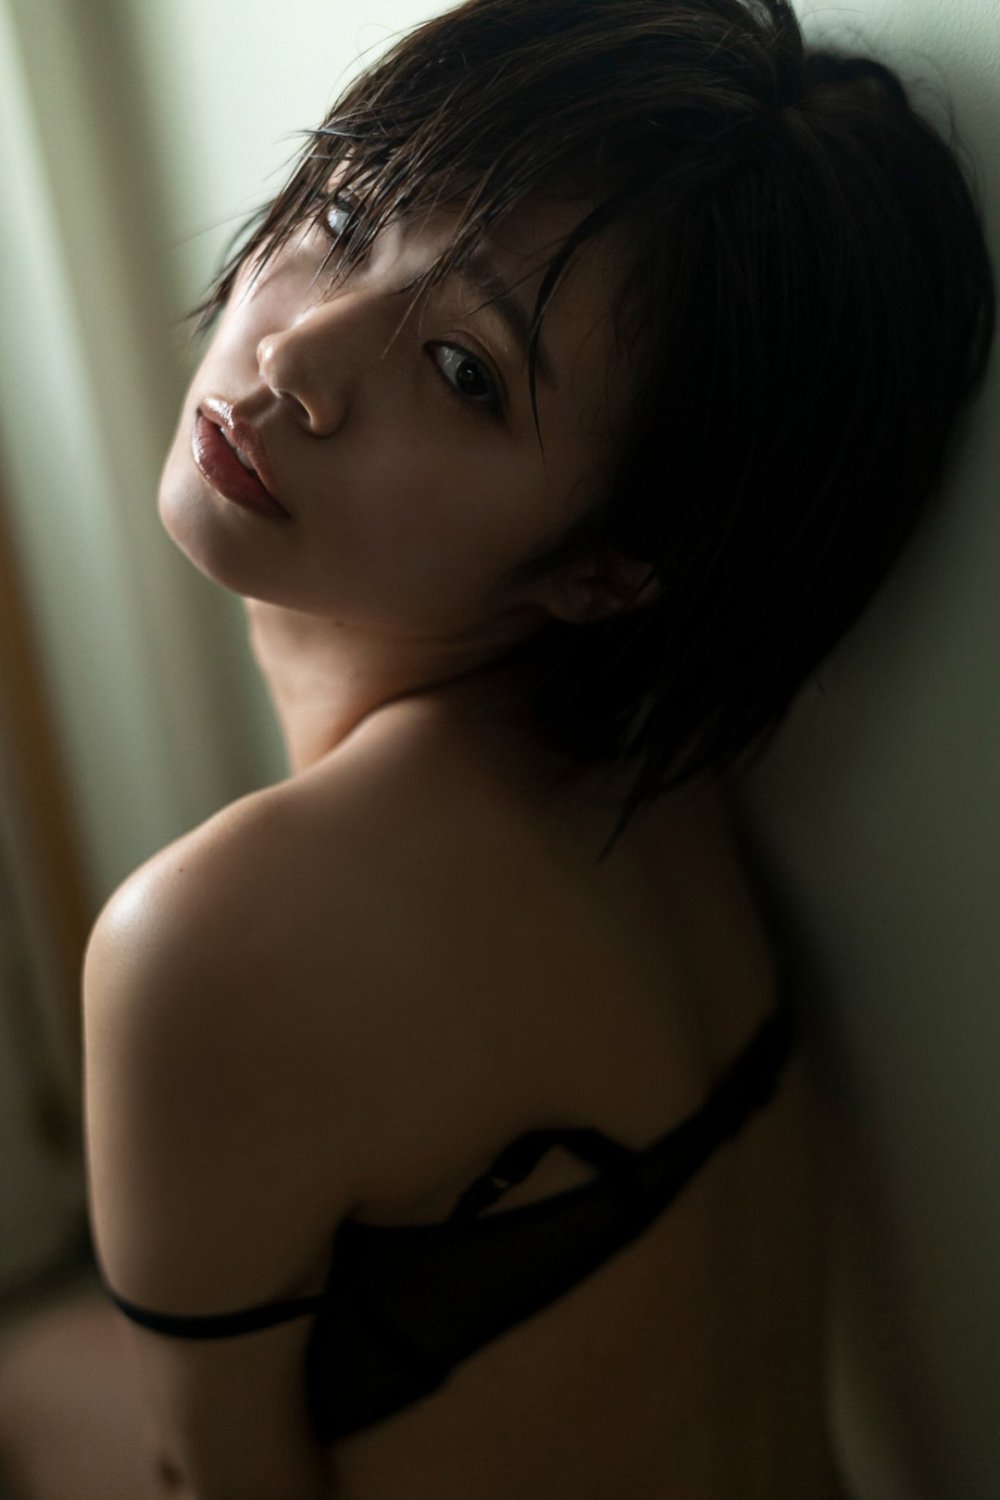 Nanoka Sexy and Hottest Photos , Latest Pics